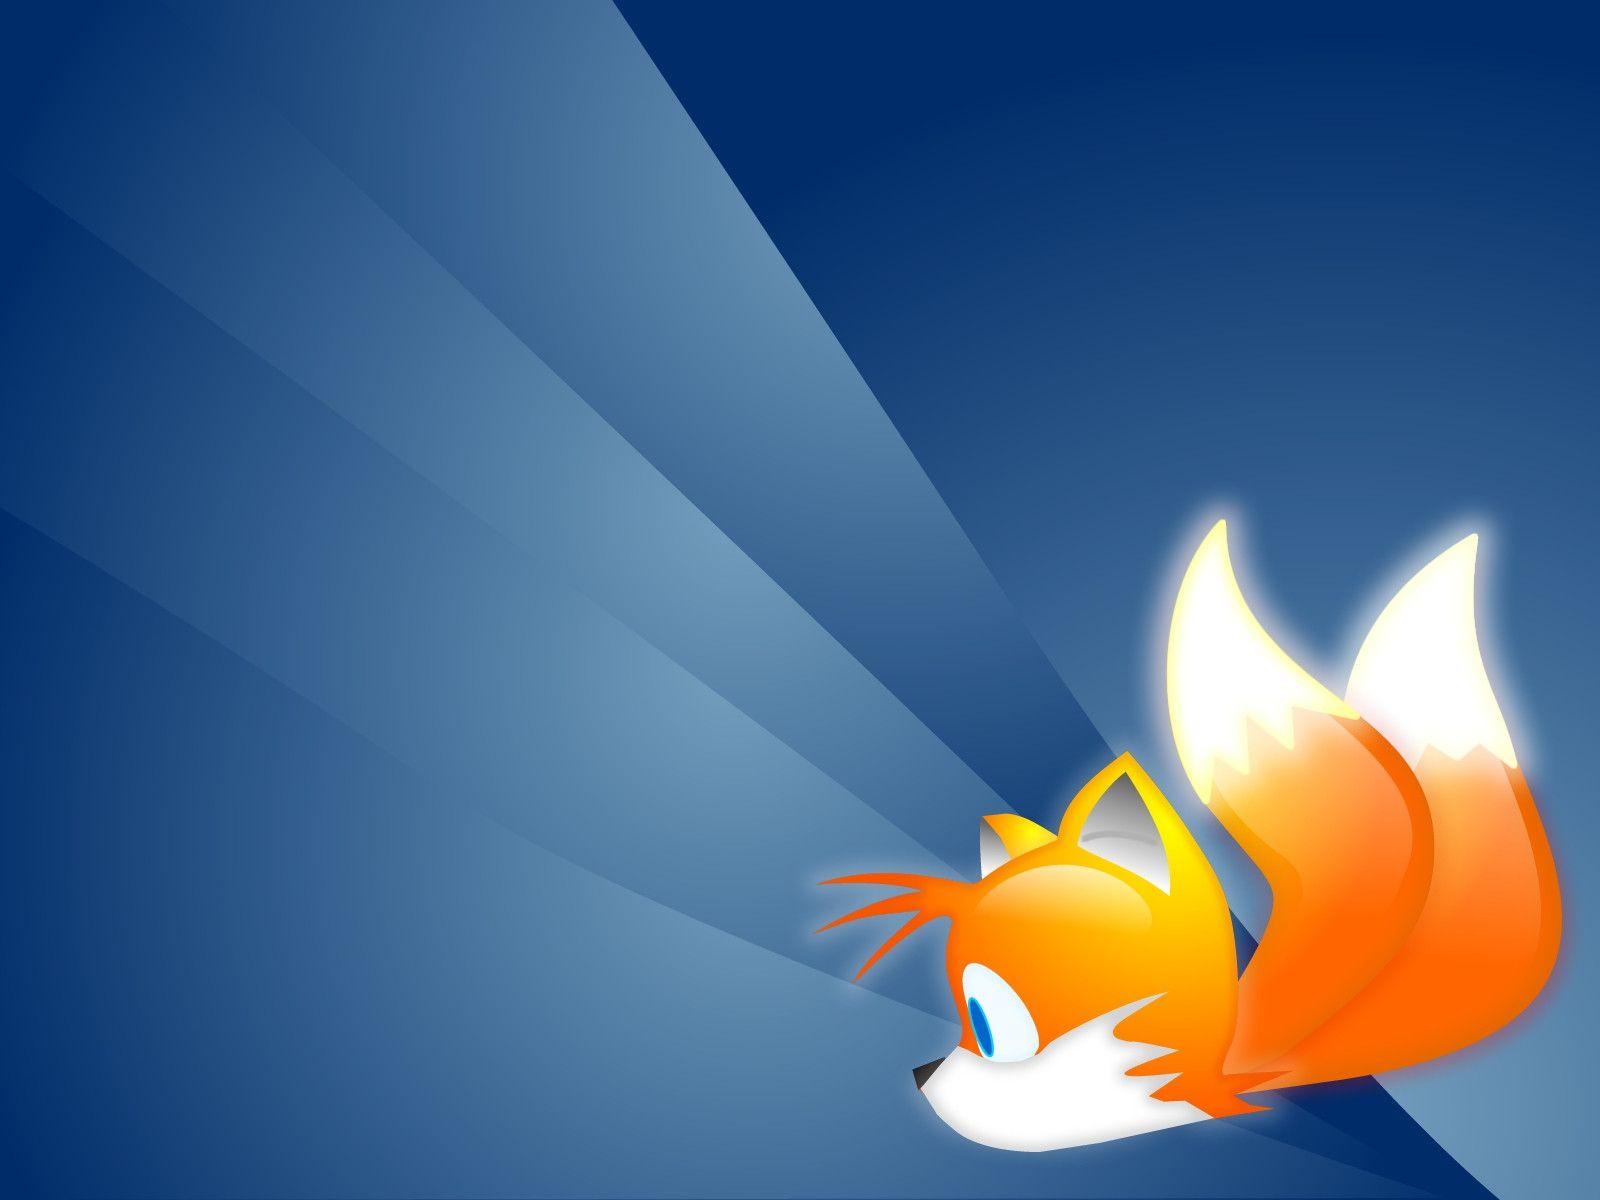 Extra Firefox Wallpaper